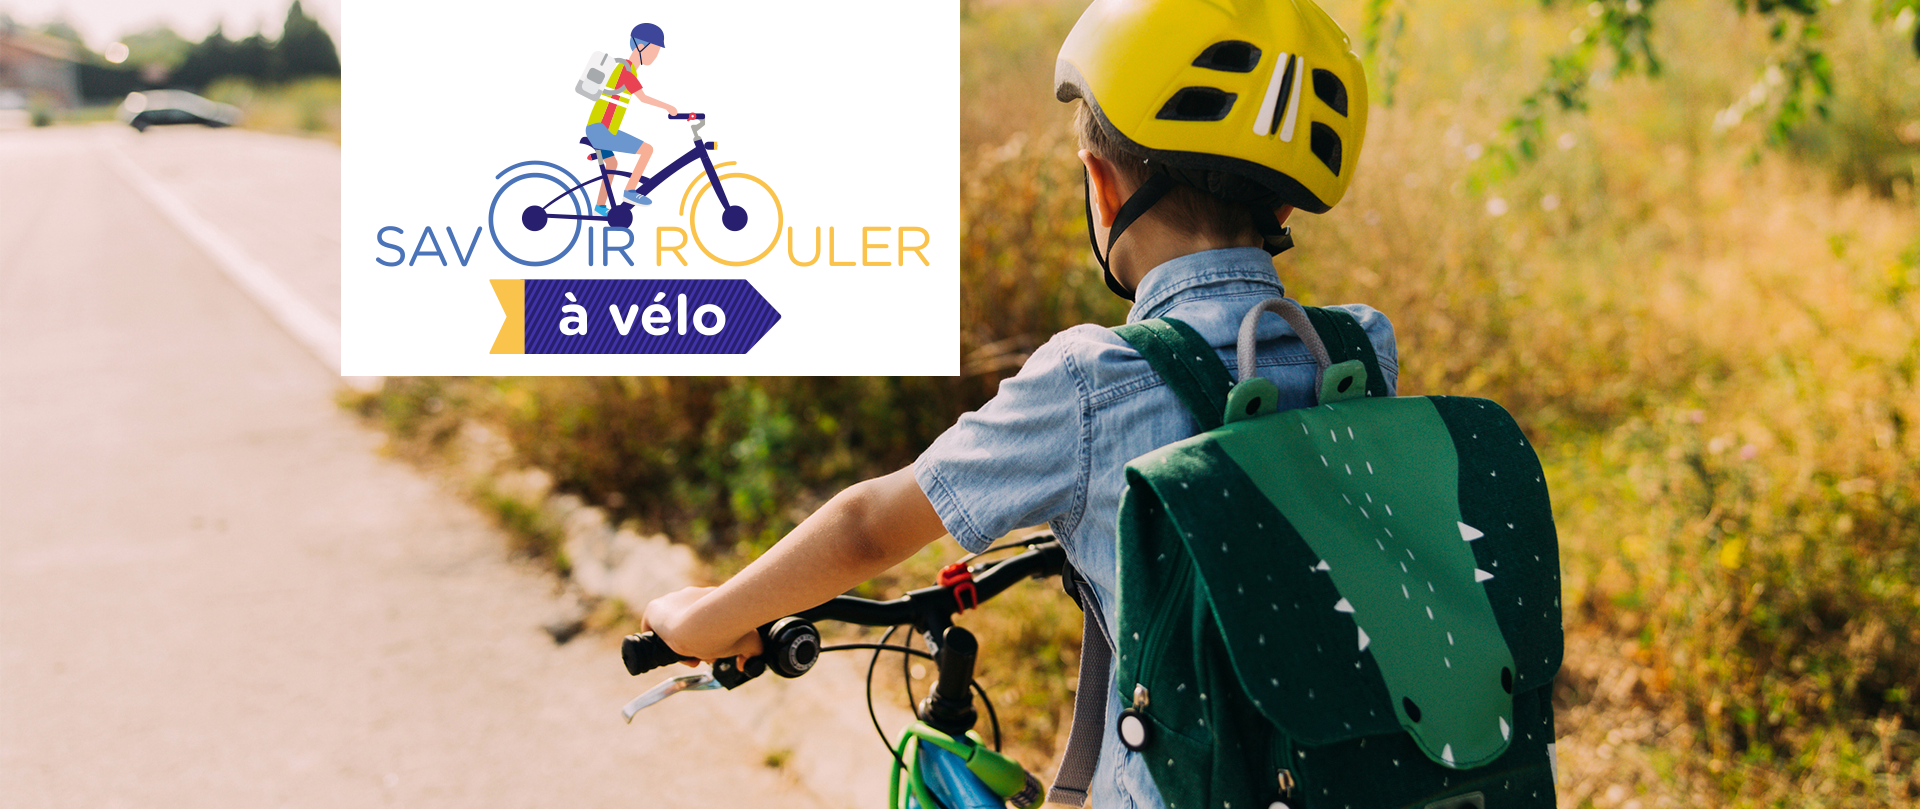 Vélo, le savoir rouler pour les enfants - Casal Sport